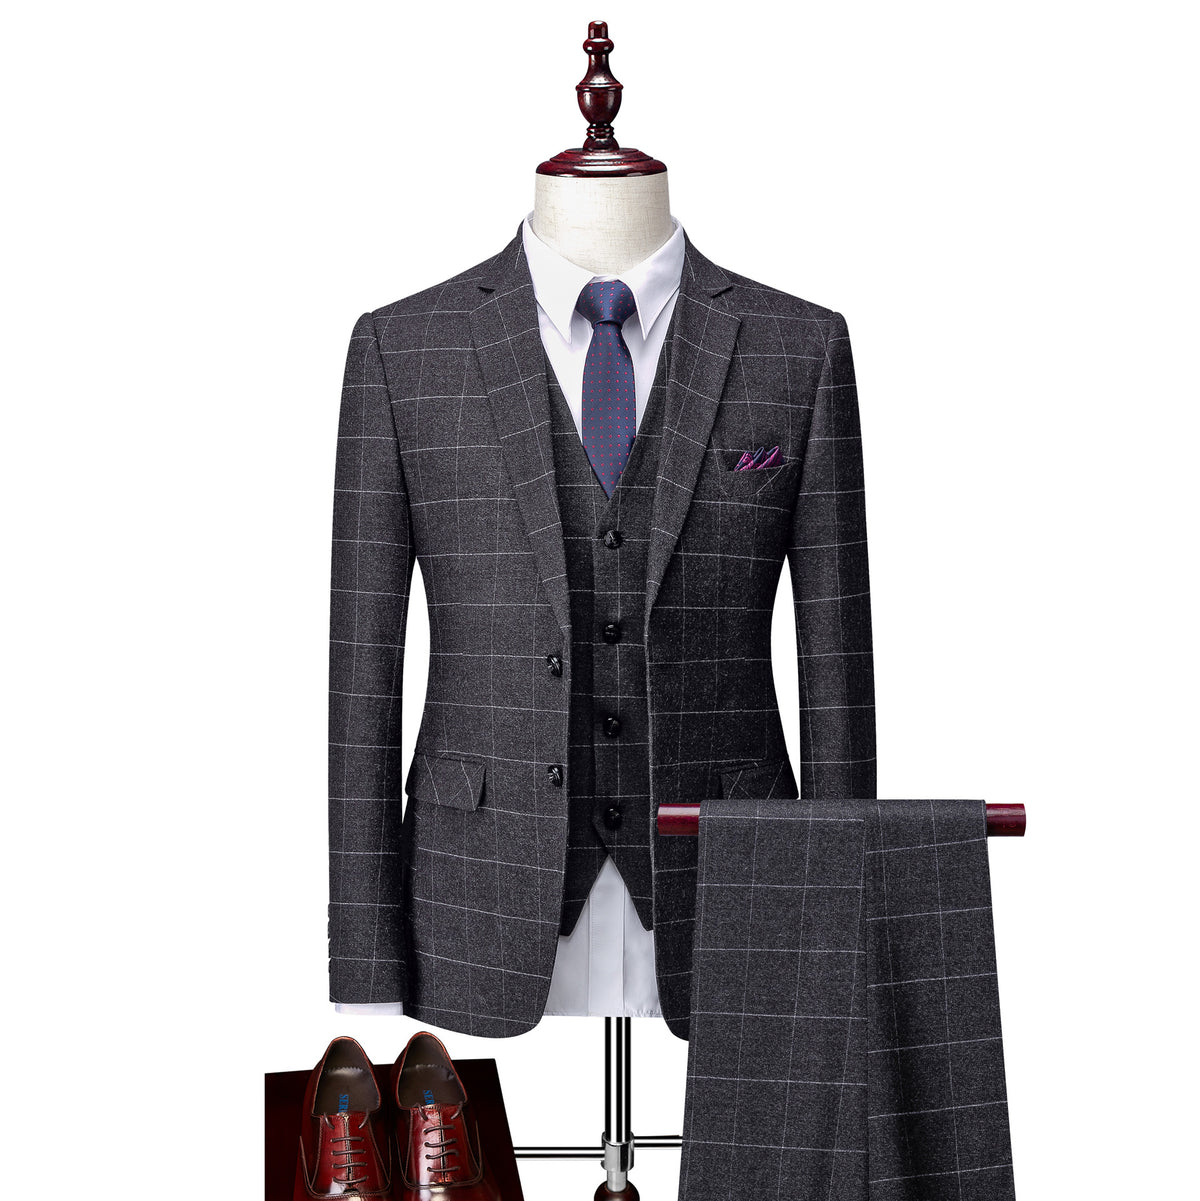 Men's Business Suits Slim Fit Wedding Groom Suit-Suit-Bennys Beauty World